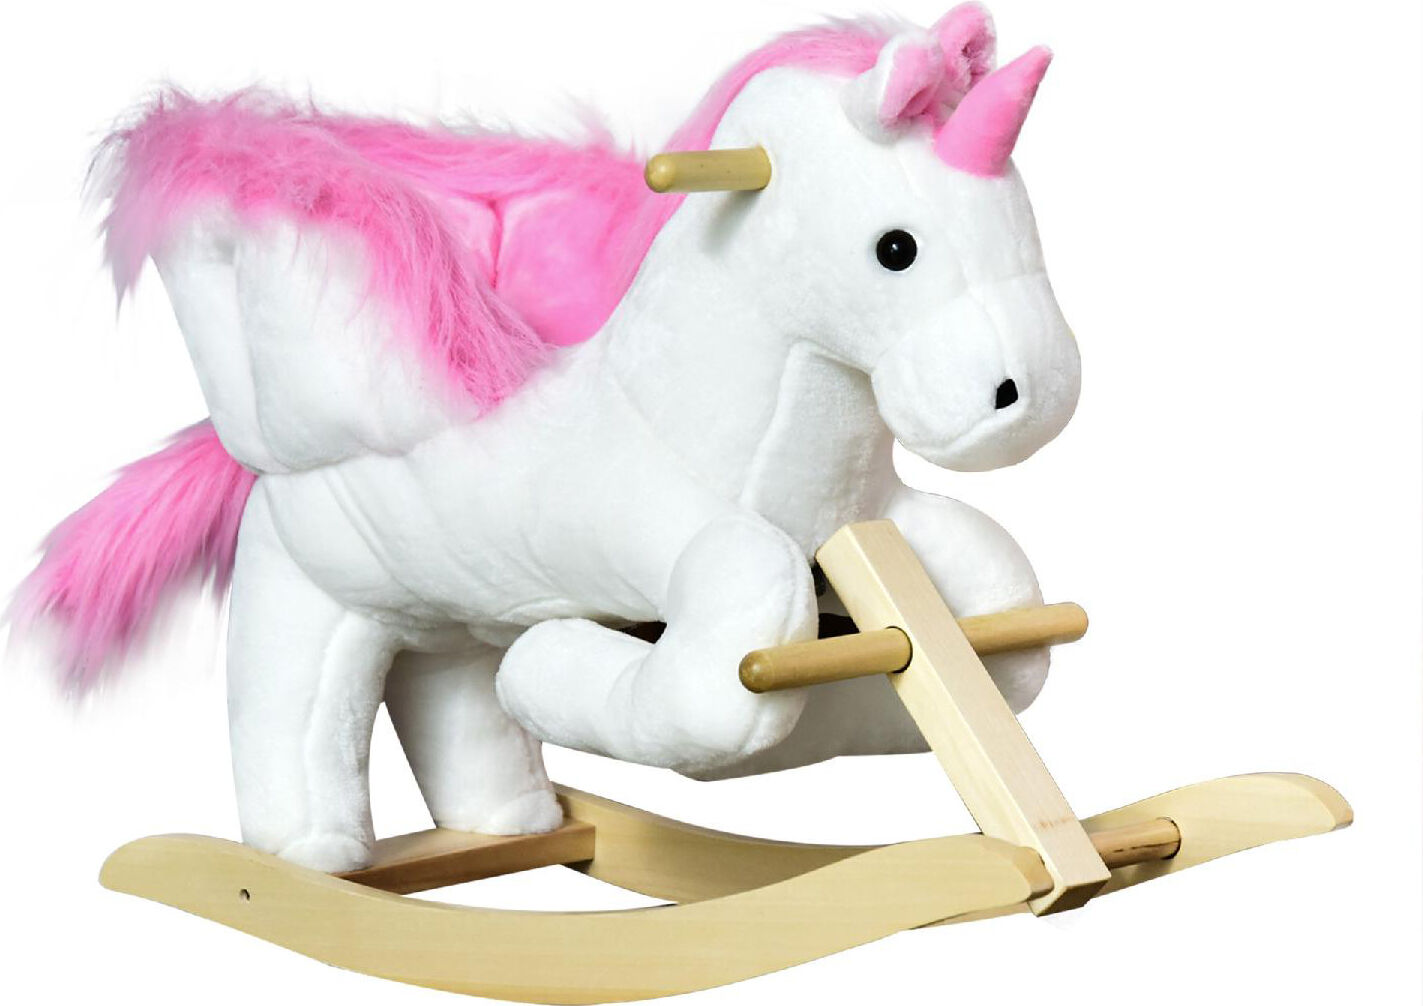 dechome 076v01/330 cavallo a dondolo a forma di unicorno bianco per bambini da 18 + mesi - 076v01/330